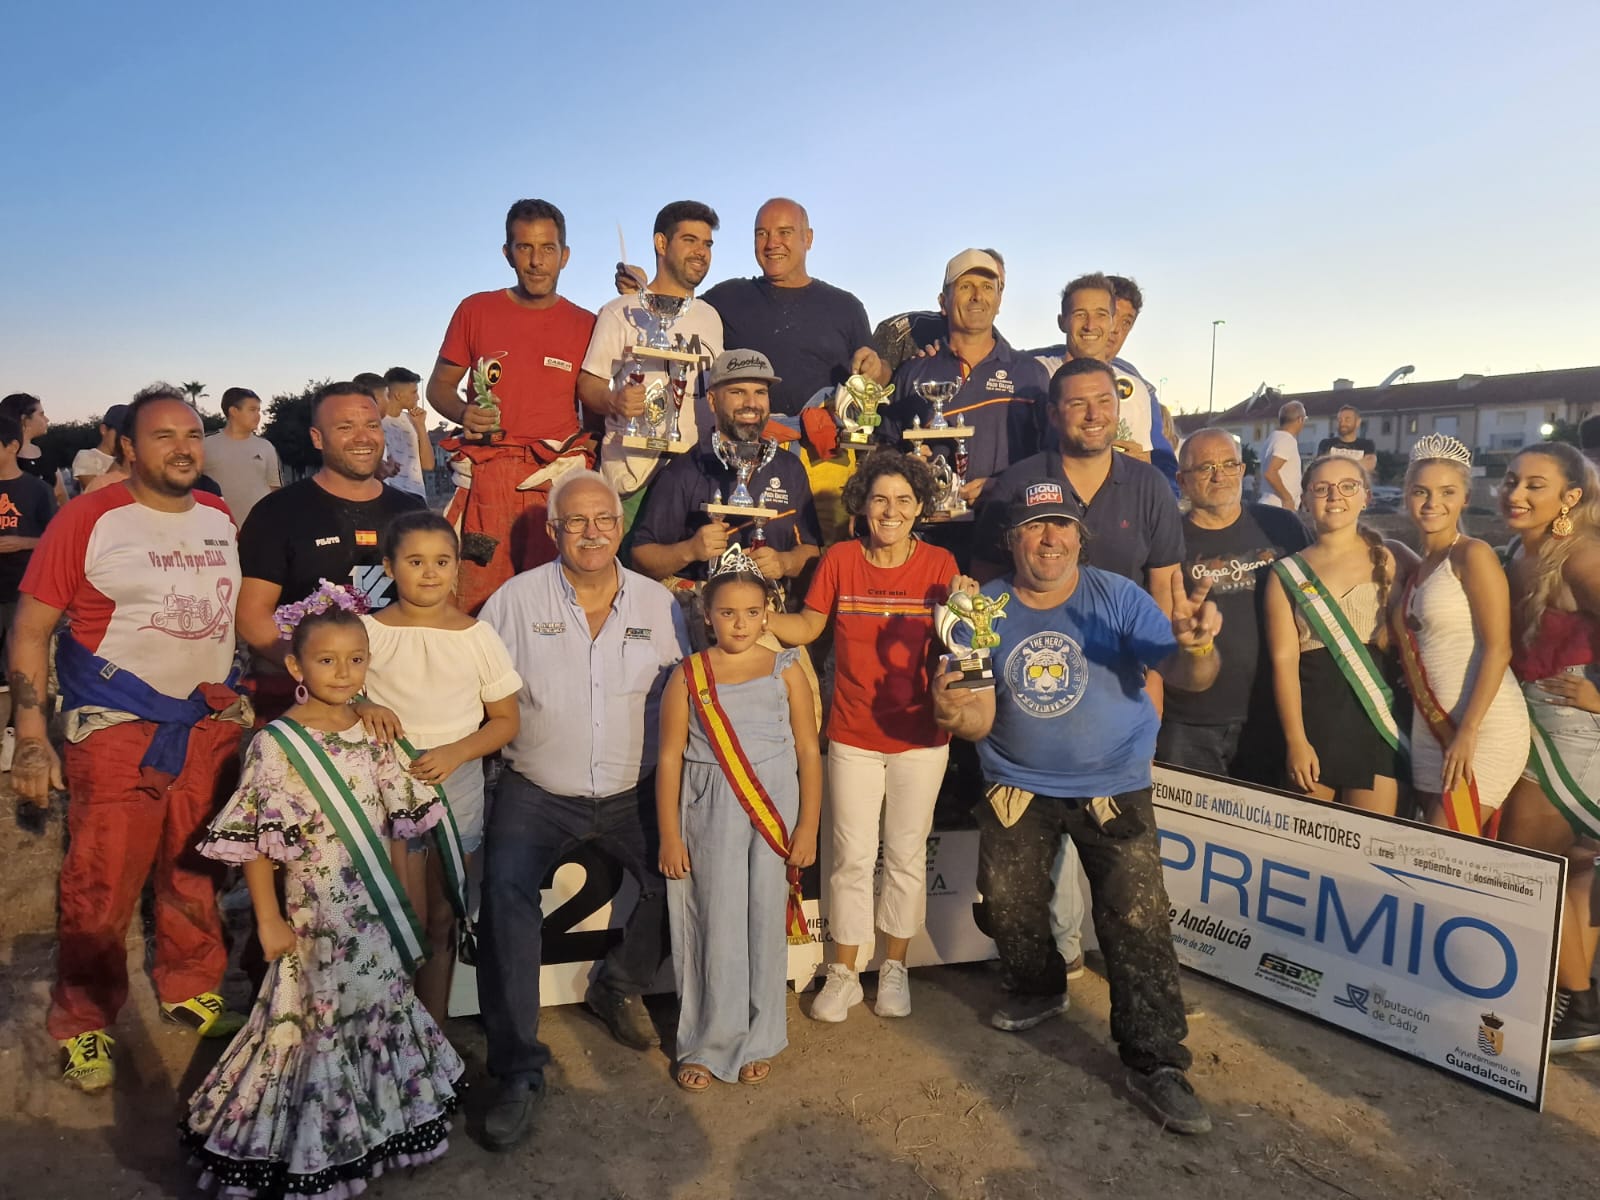 Pilotos ganadores en el XXV Campeonato de Tractores de Andalucía celebrado en Guadalcacín.